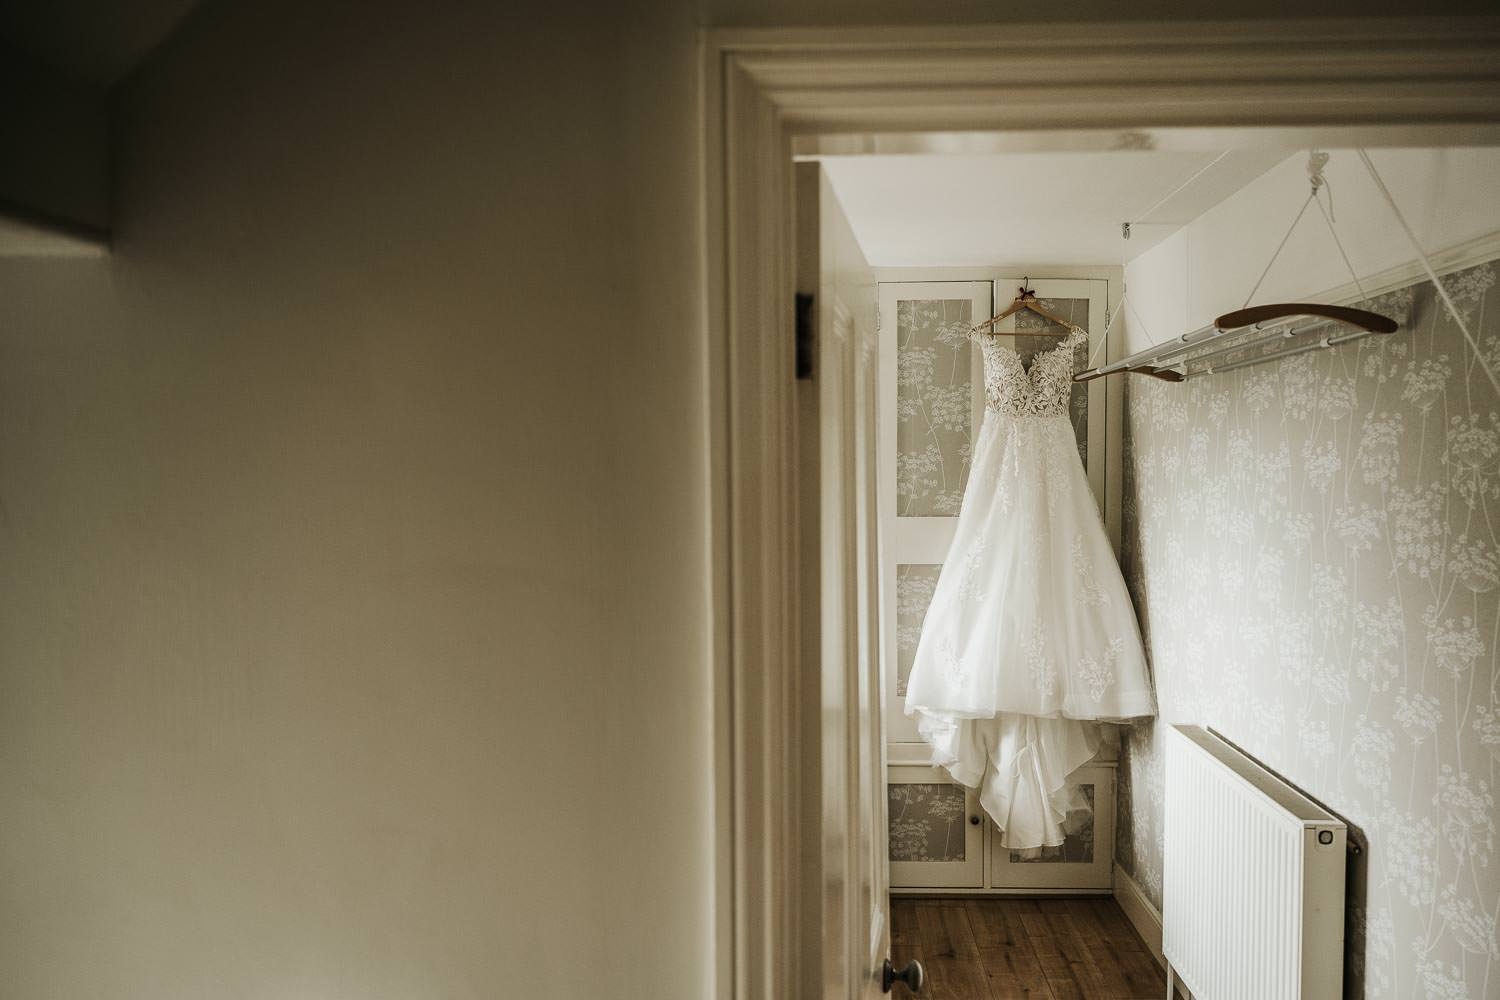 Wedding gown seen hanging through doorframe of bedroom